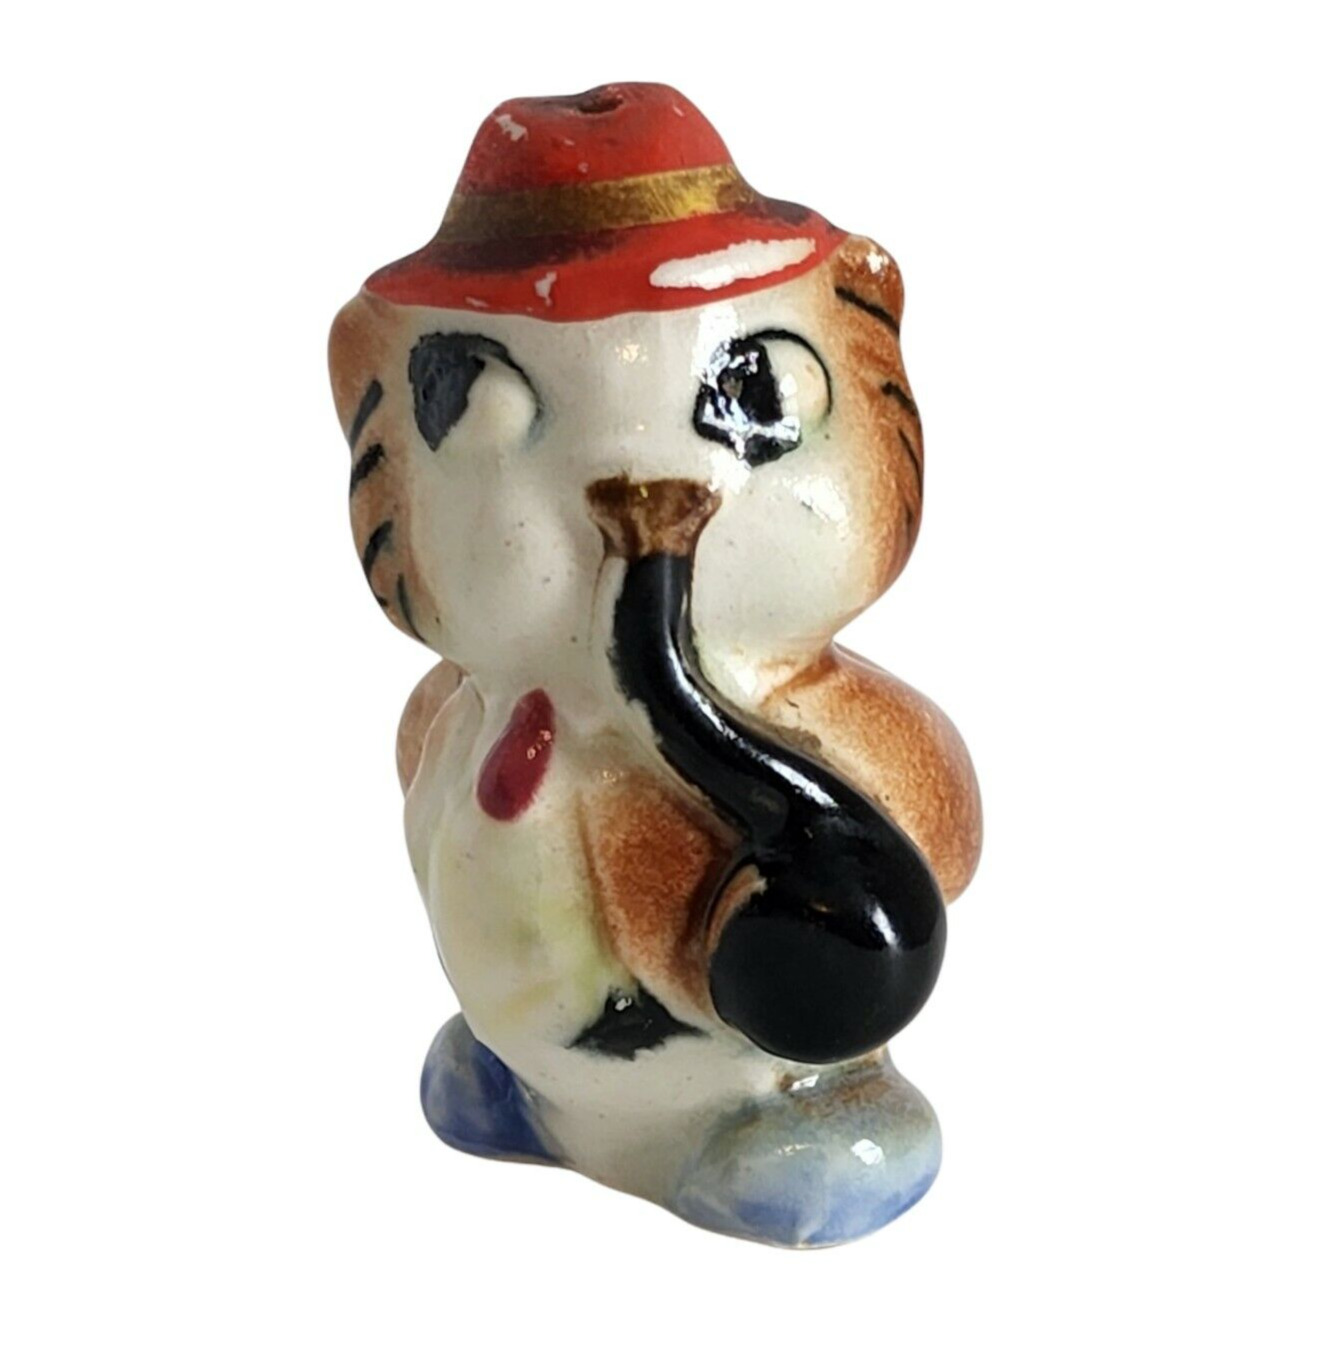 Vintage Japan Ceramic Anthropomorphic Owl Smoking Pipe with Red Hat Salt Shaker